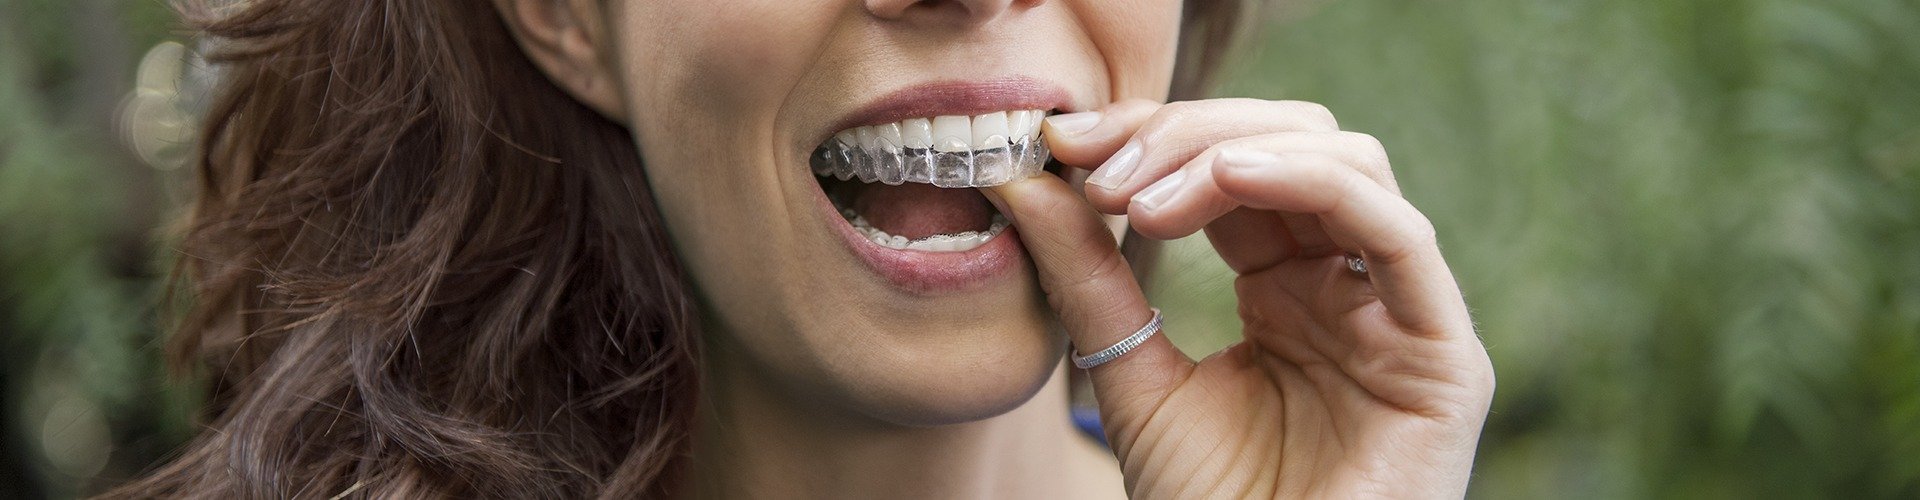 La importancia de tener los dientes bien alineados